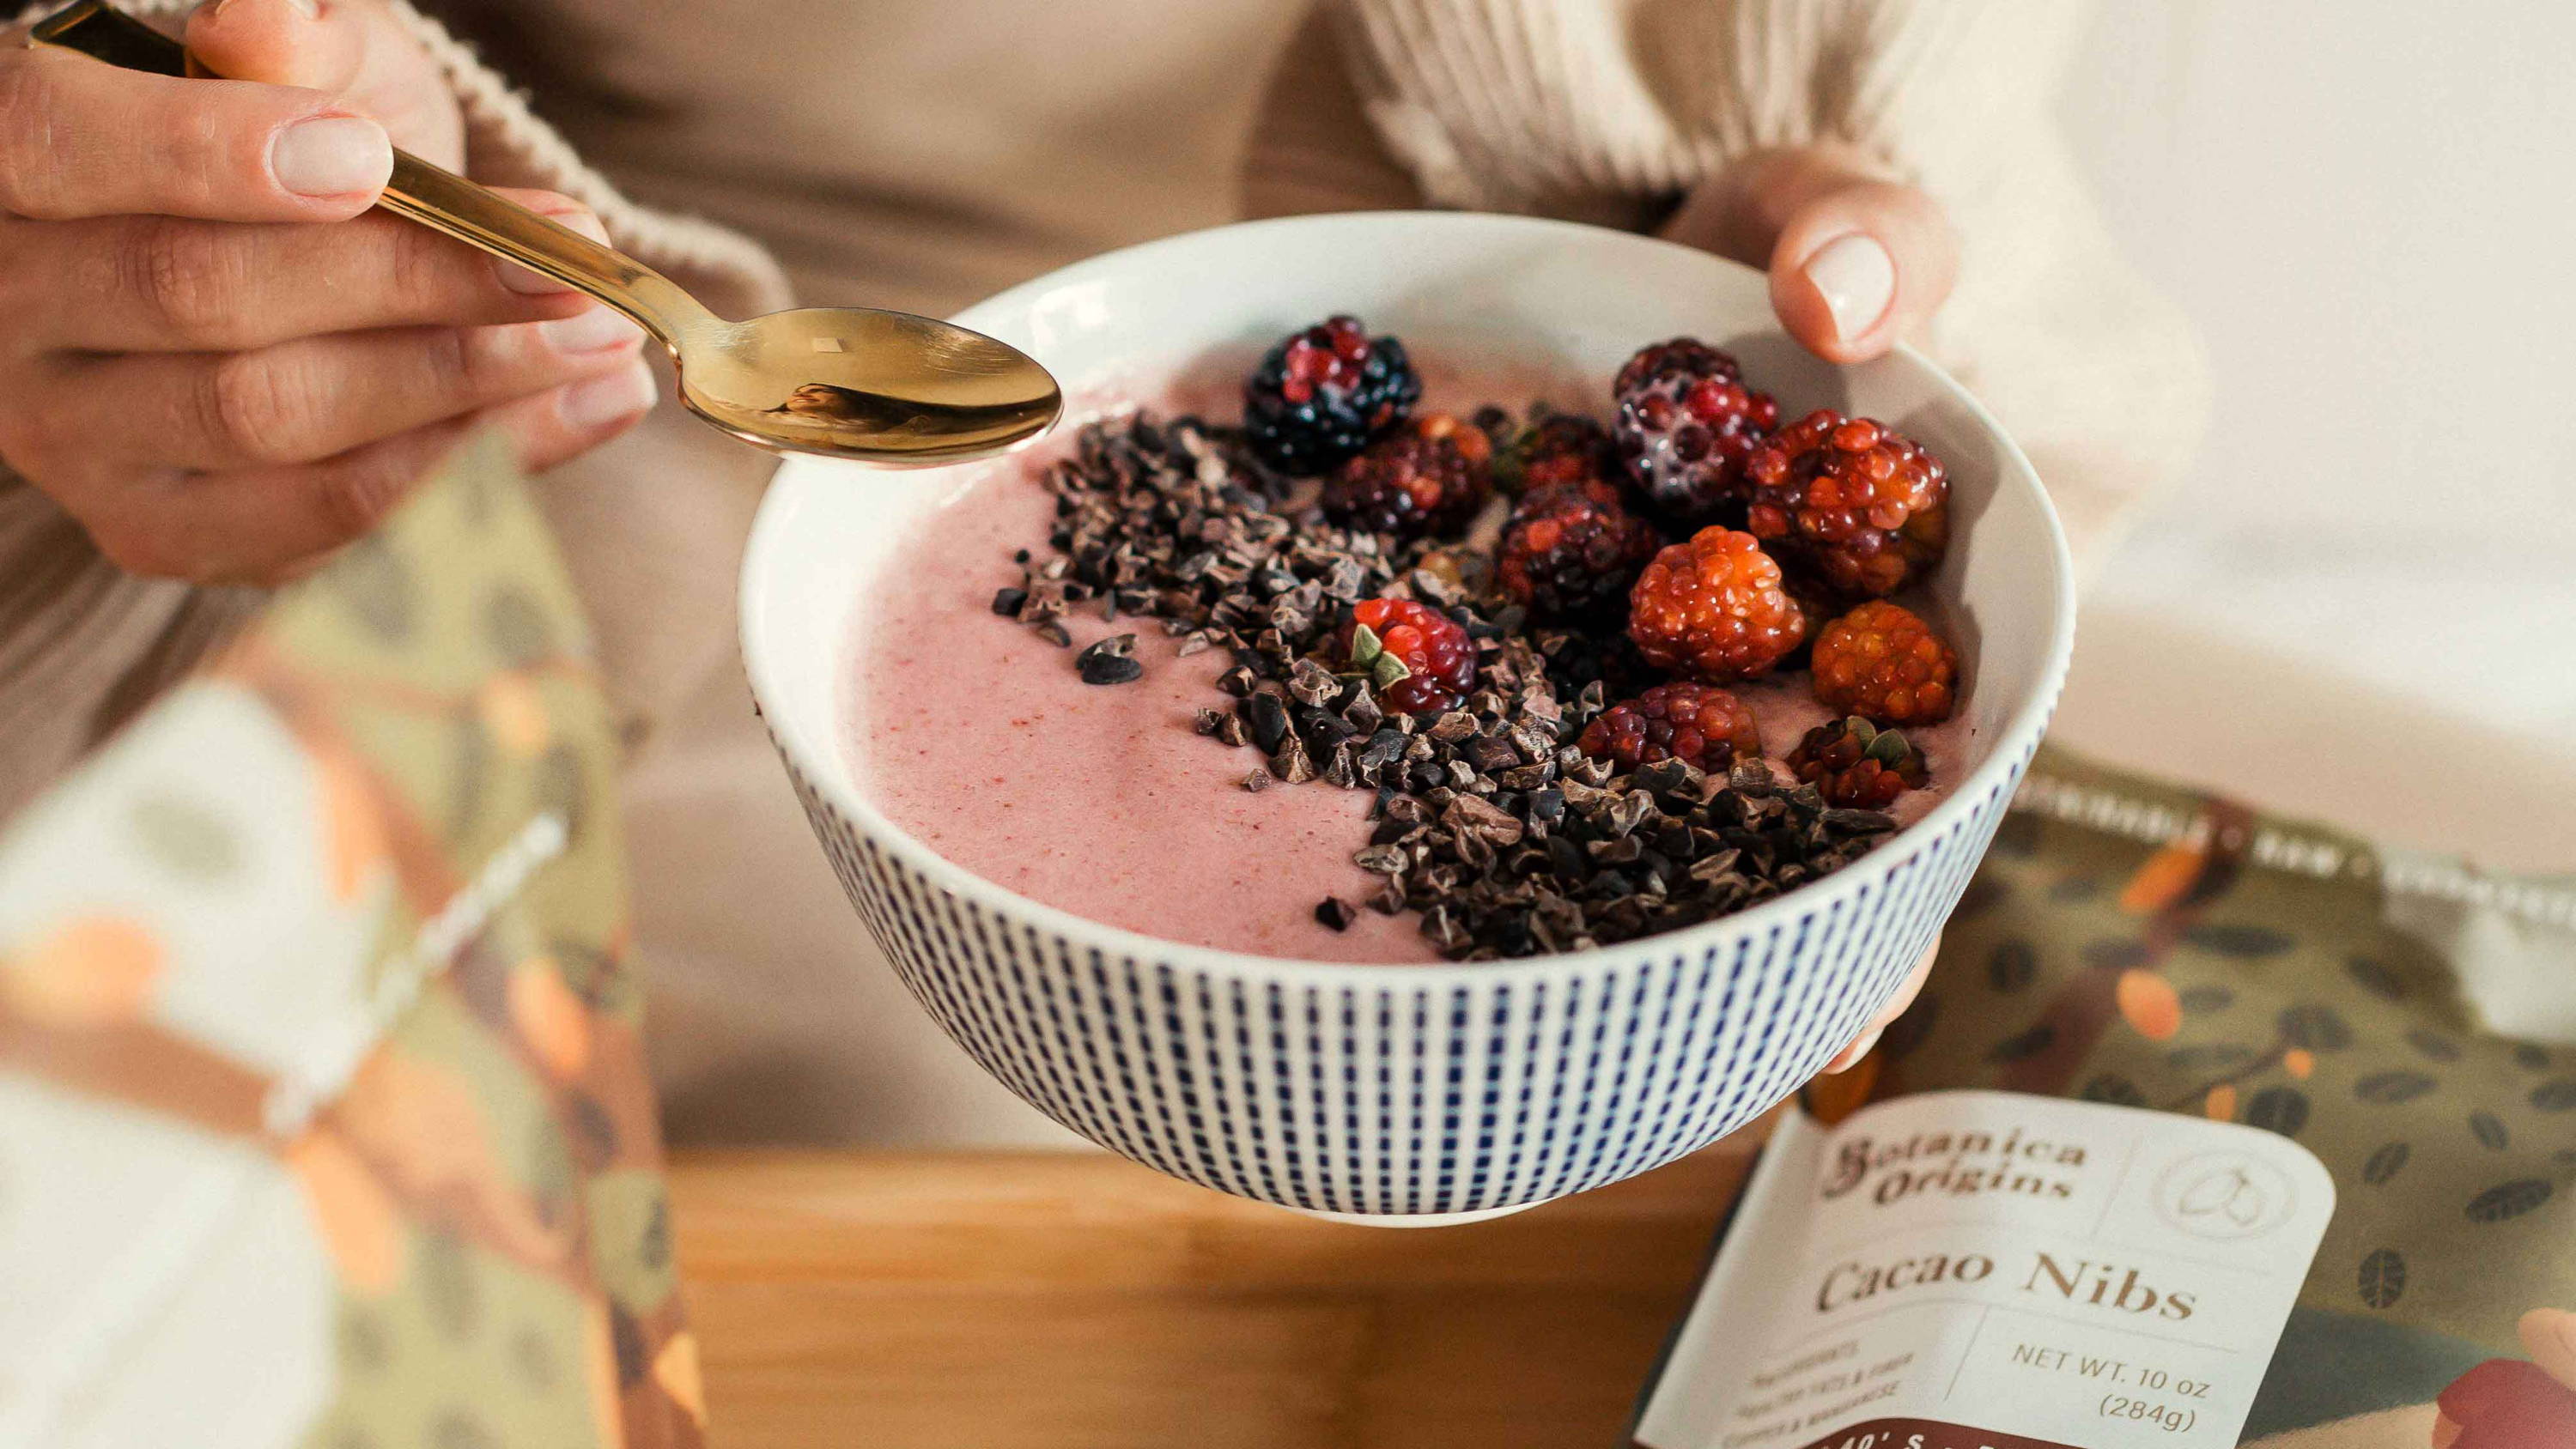 berry smoothie bowl by botanica origins